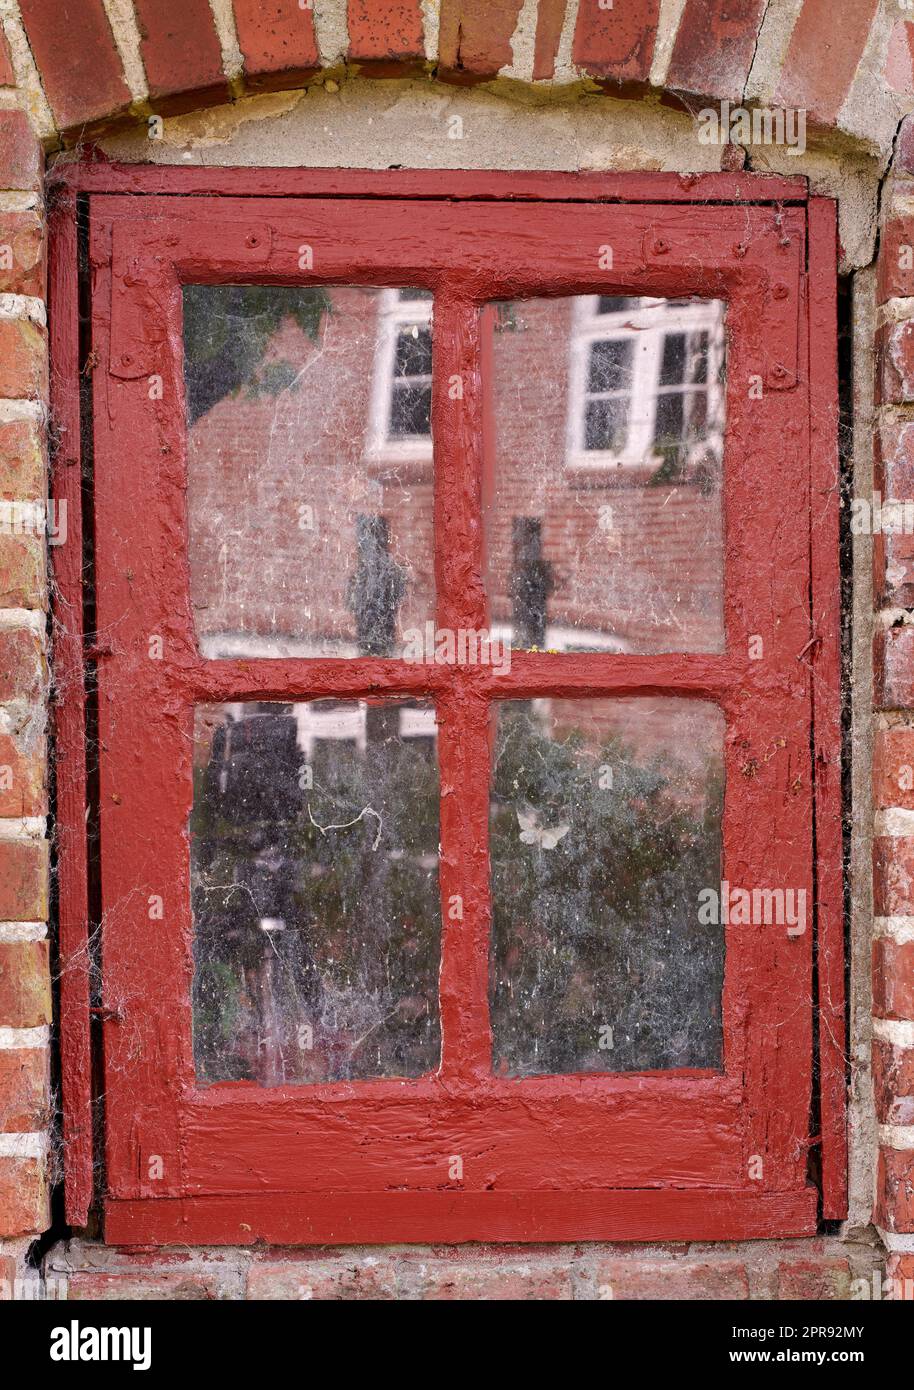 Gros plan d'une vieille fenêtre sale dans une maison en brique rouge. Zoomez sur les caisses avec cadre en bois rouge sur un bâtiment historique à la texture de peinture bosselée. Détails extérieurs macro de seuil de fenêtre dans une ville traditionnelle Banque D'Images